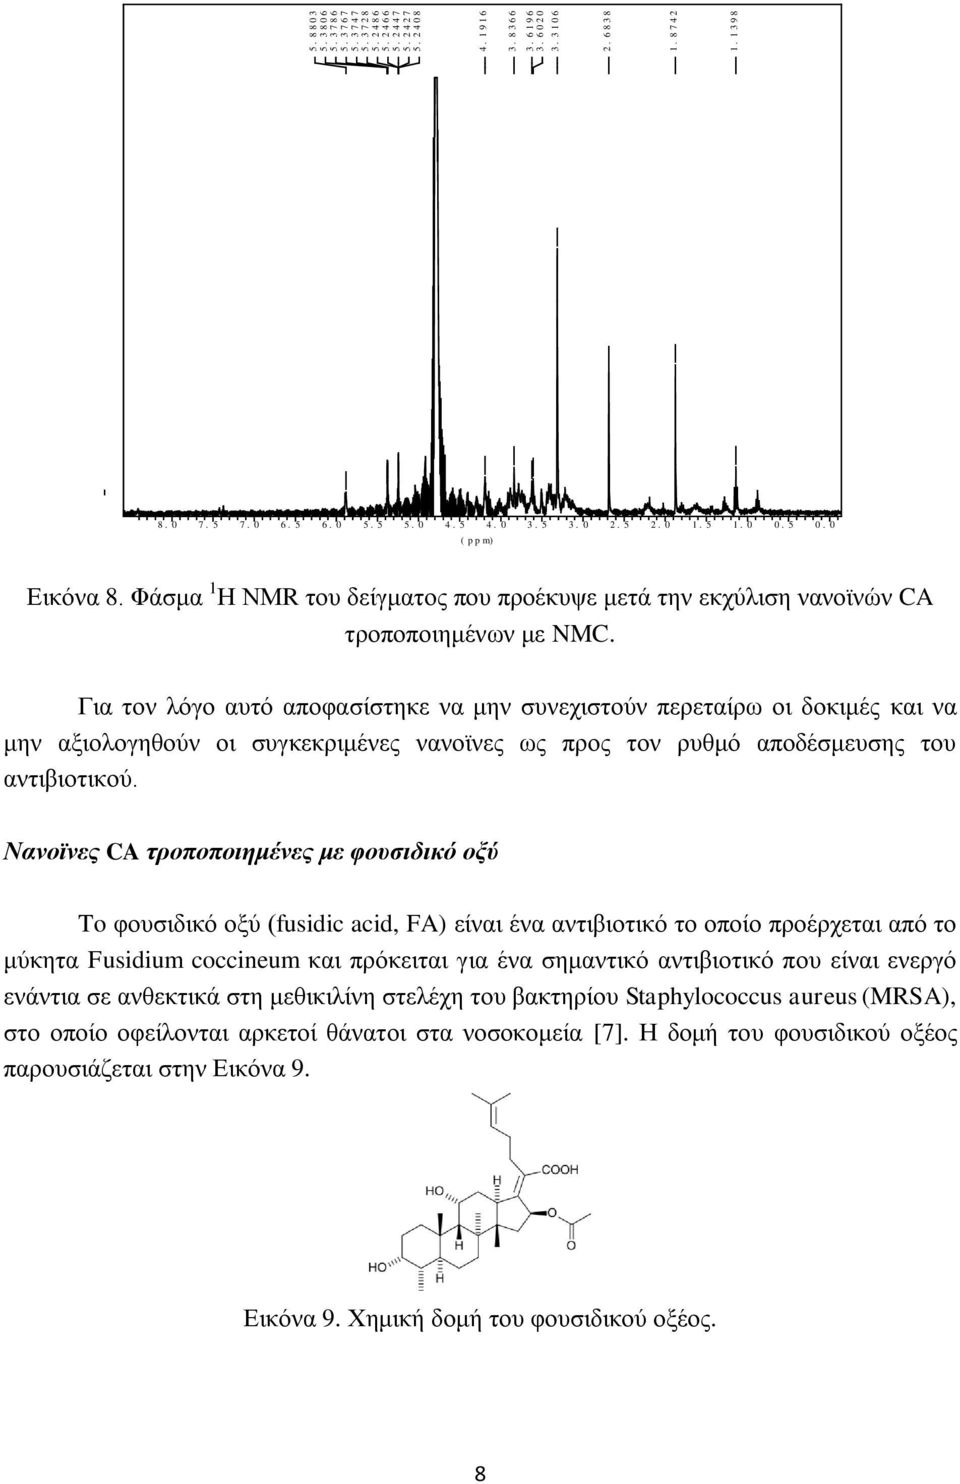 Φάσμα 1 Η ΝΜR του δείγματος που προέκυψε μετά την εκχύλιση νανοϊνών CA τροποποιημένων με NMC.